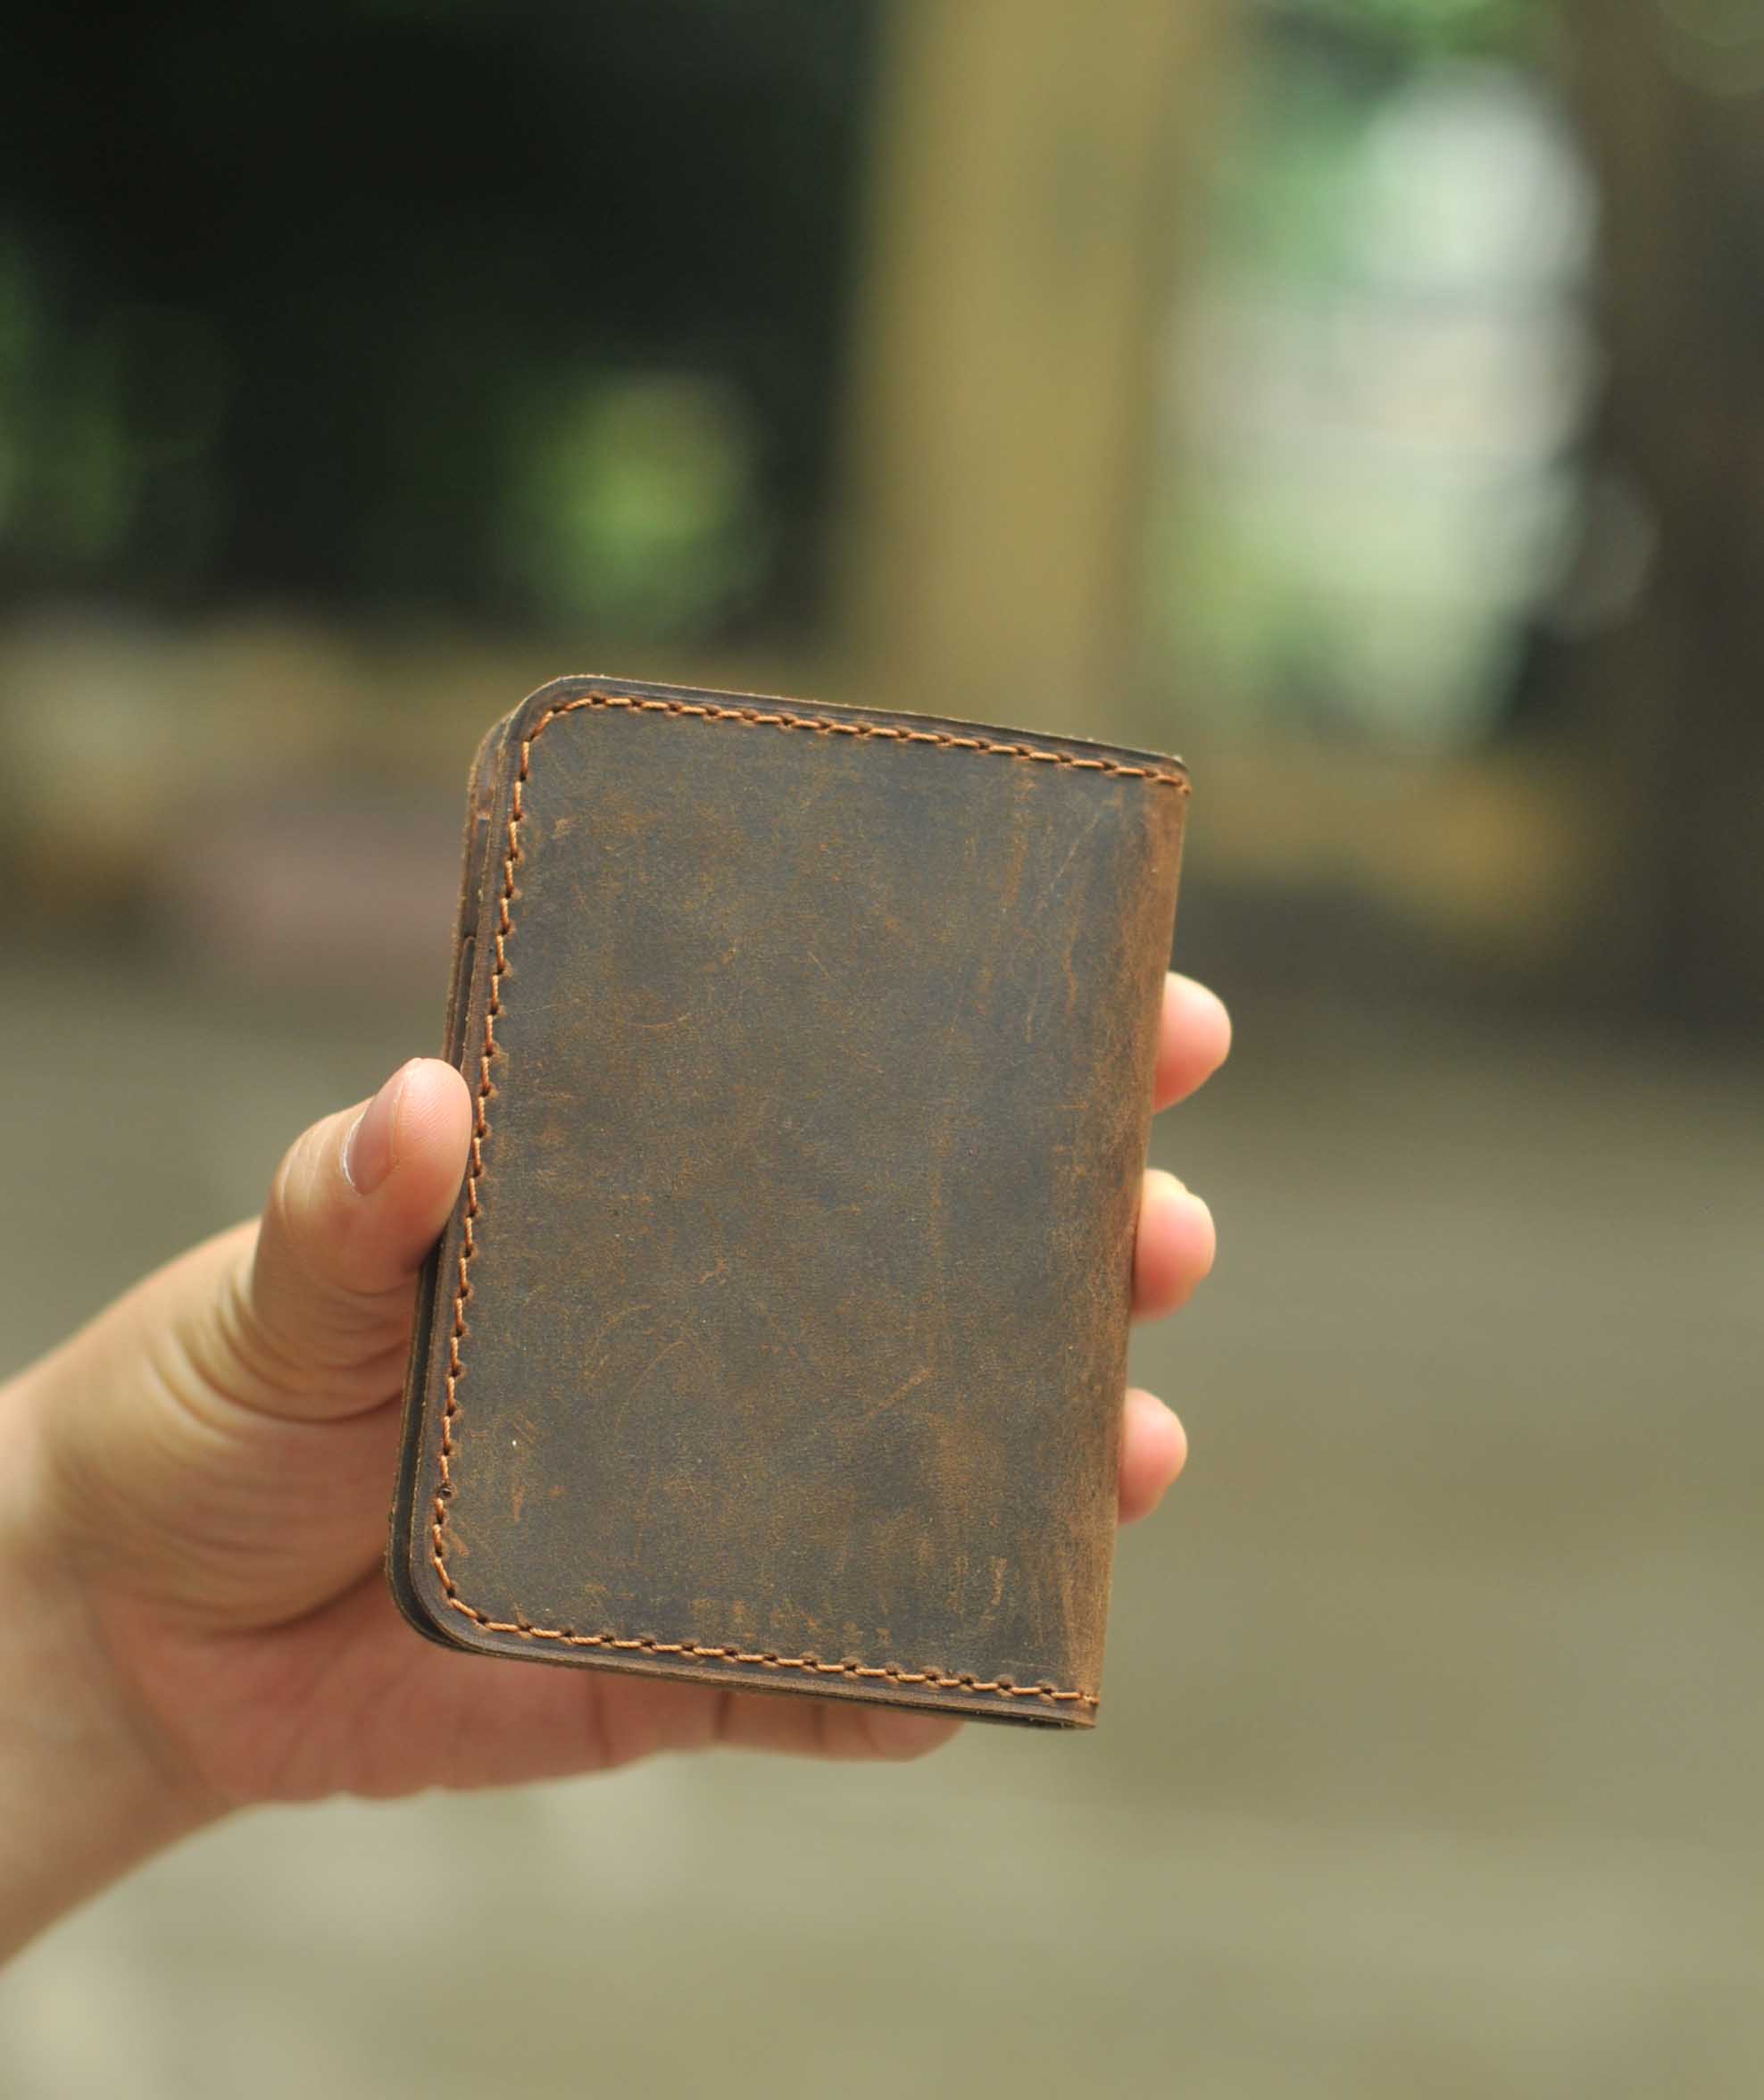 Bóp ví nam nữ đựng thẻ bỏ túi nhỏ gọn chất liệu da bò sáp chuẩn (dáng ví đứng mini)